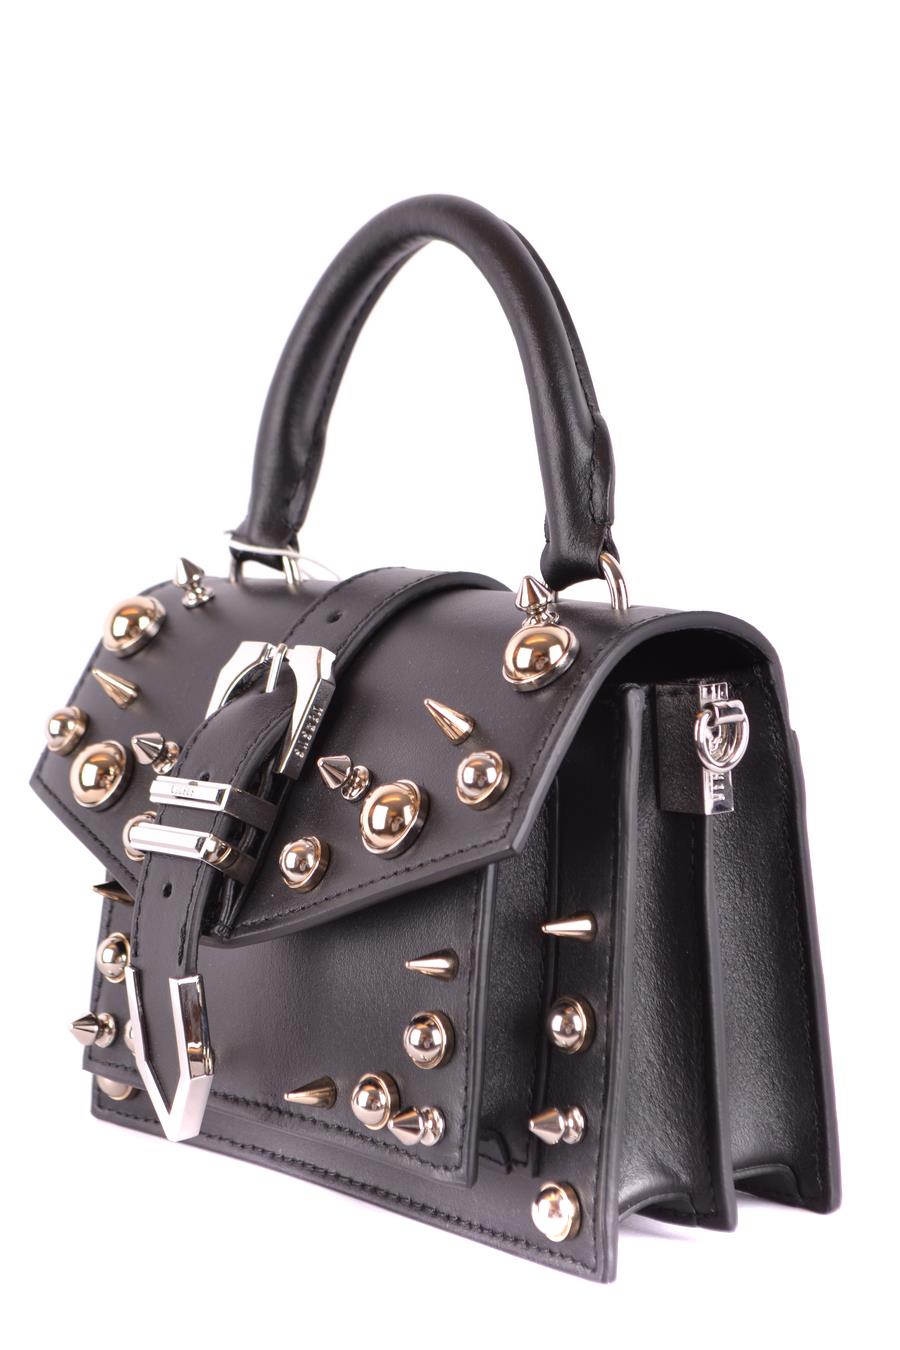 Versus Versace Fringe Leather Shoulder Bag - White Shoulder Bags, Handbags  - VES145273 | The RealReal